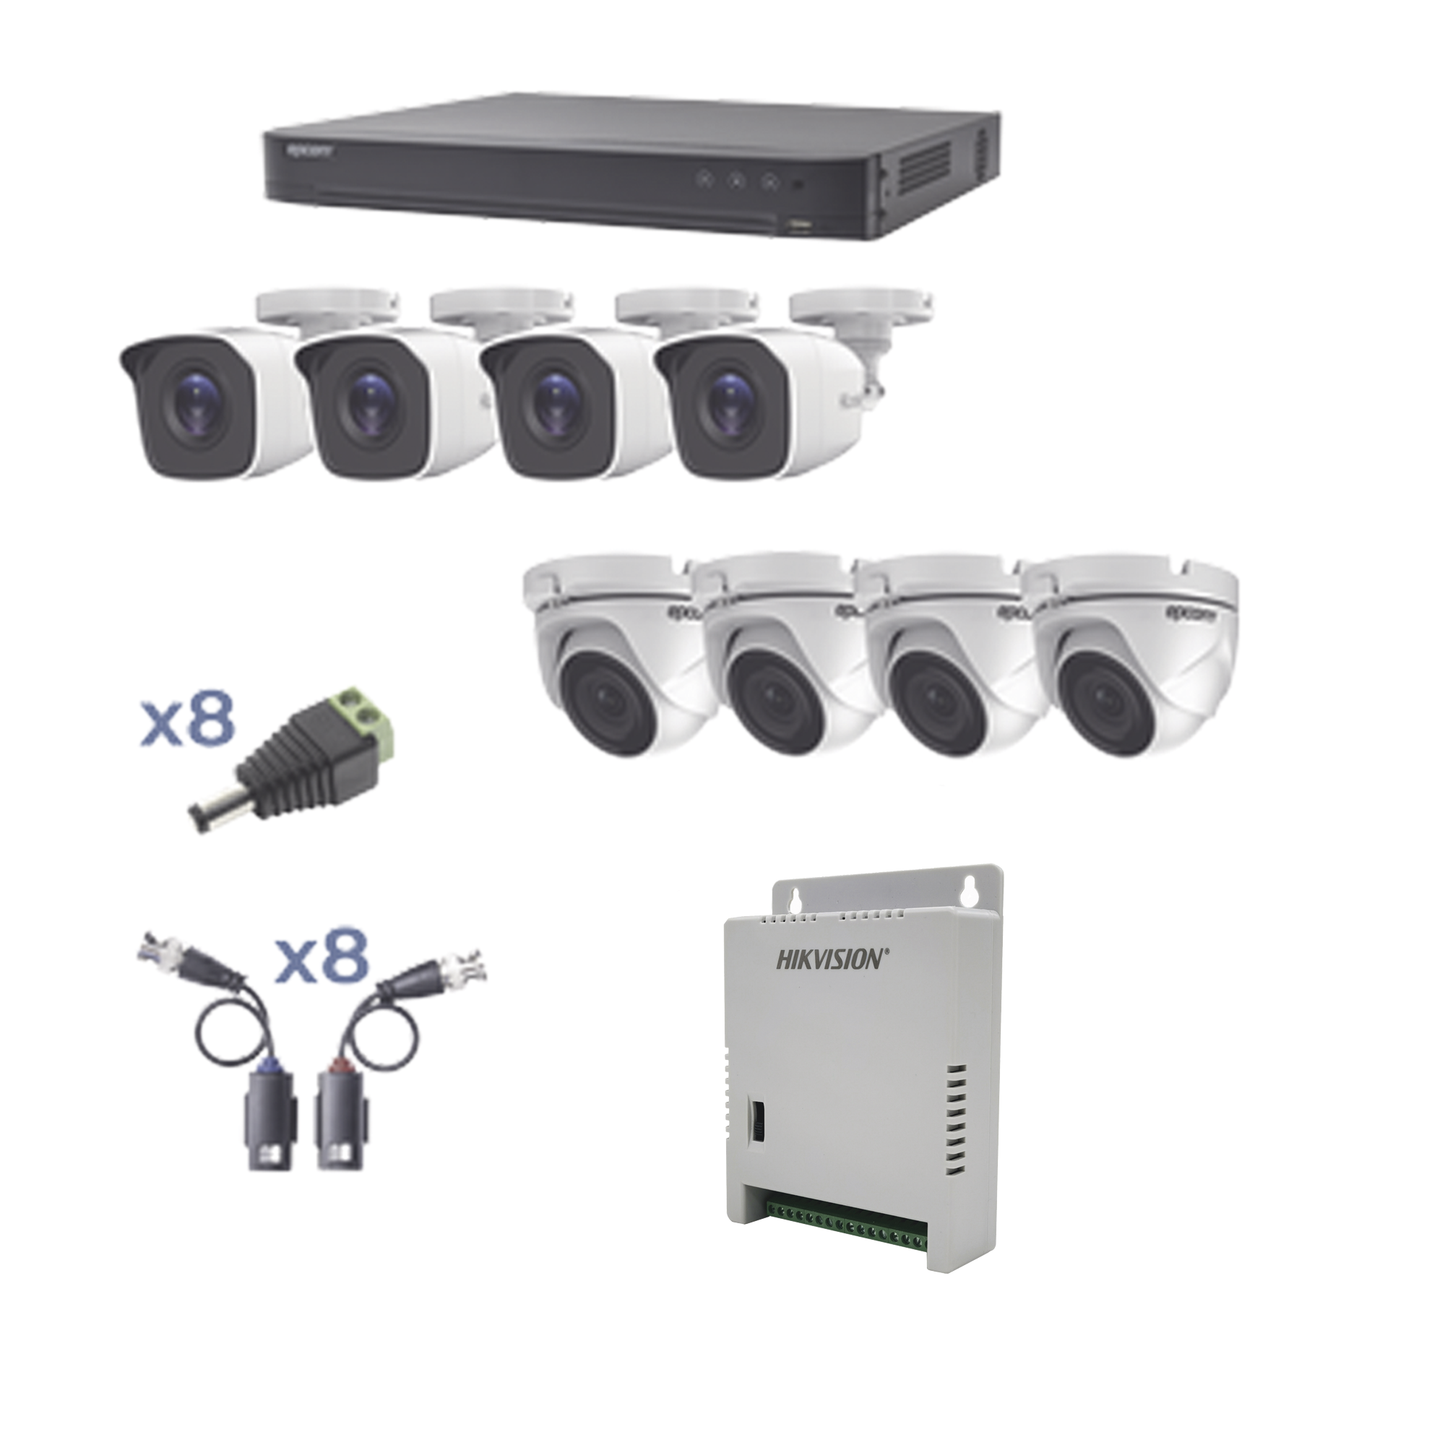 KIT TurboHD 1080p / DVR 8 Canales / 4 Cámaras Bala (exterior 2.8 mm) / 4 Cámaras Eyeball (exterior 2.8 mm) / Transceptores / Conectores / Fuente de Poder Profesional hasta 15 Vcc para Largas Distancias